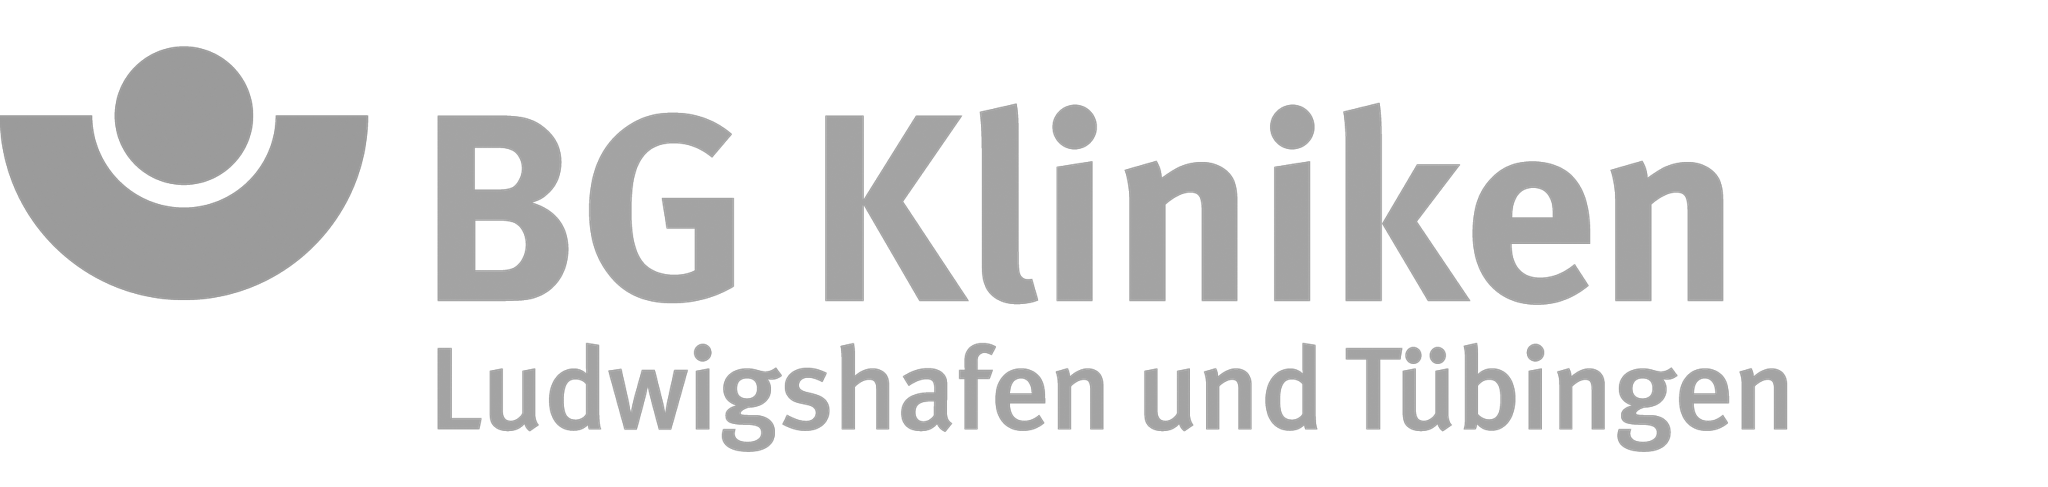 Logo der BG Kliniken Ludwigshafen und Tübingen